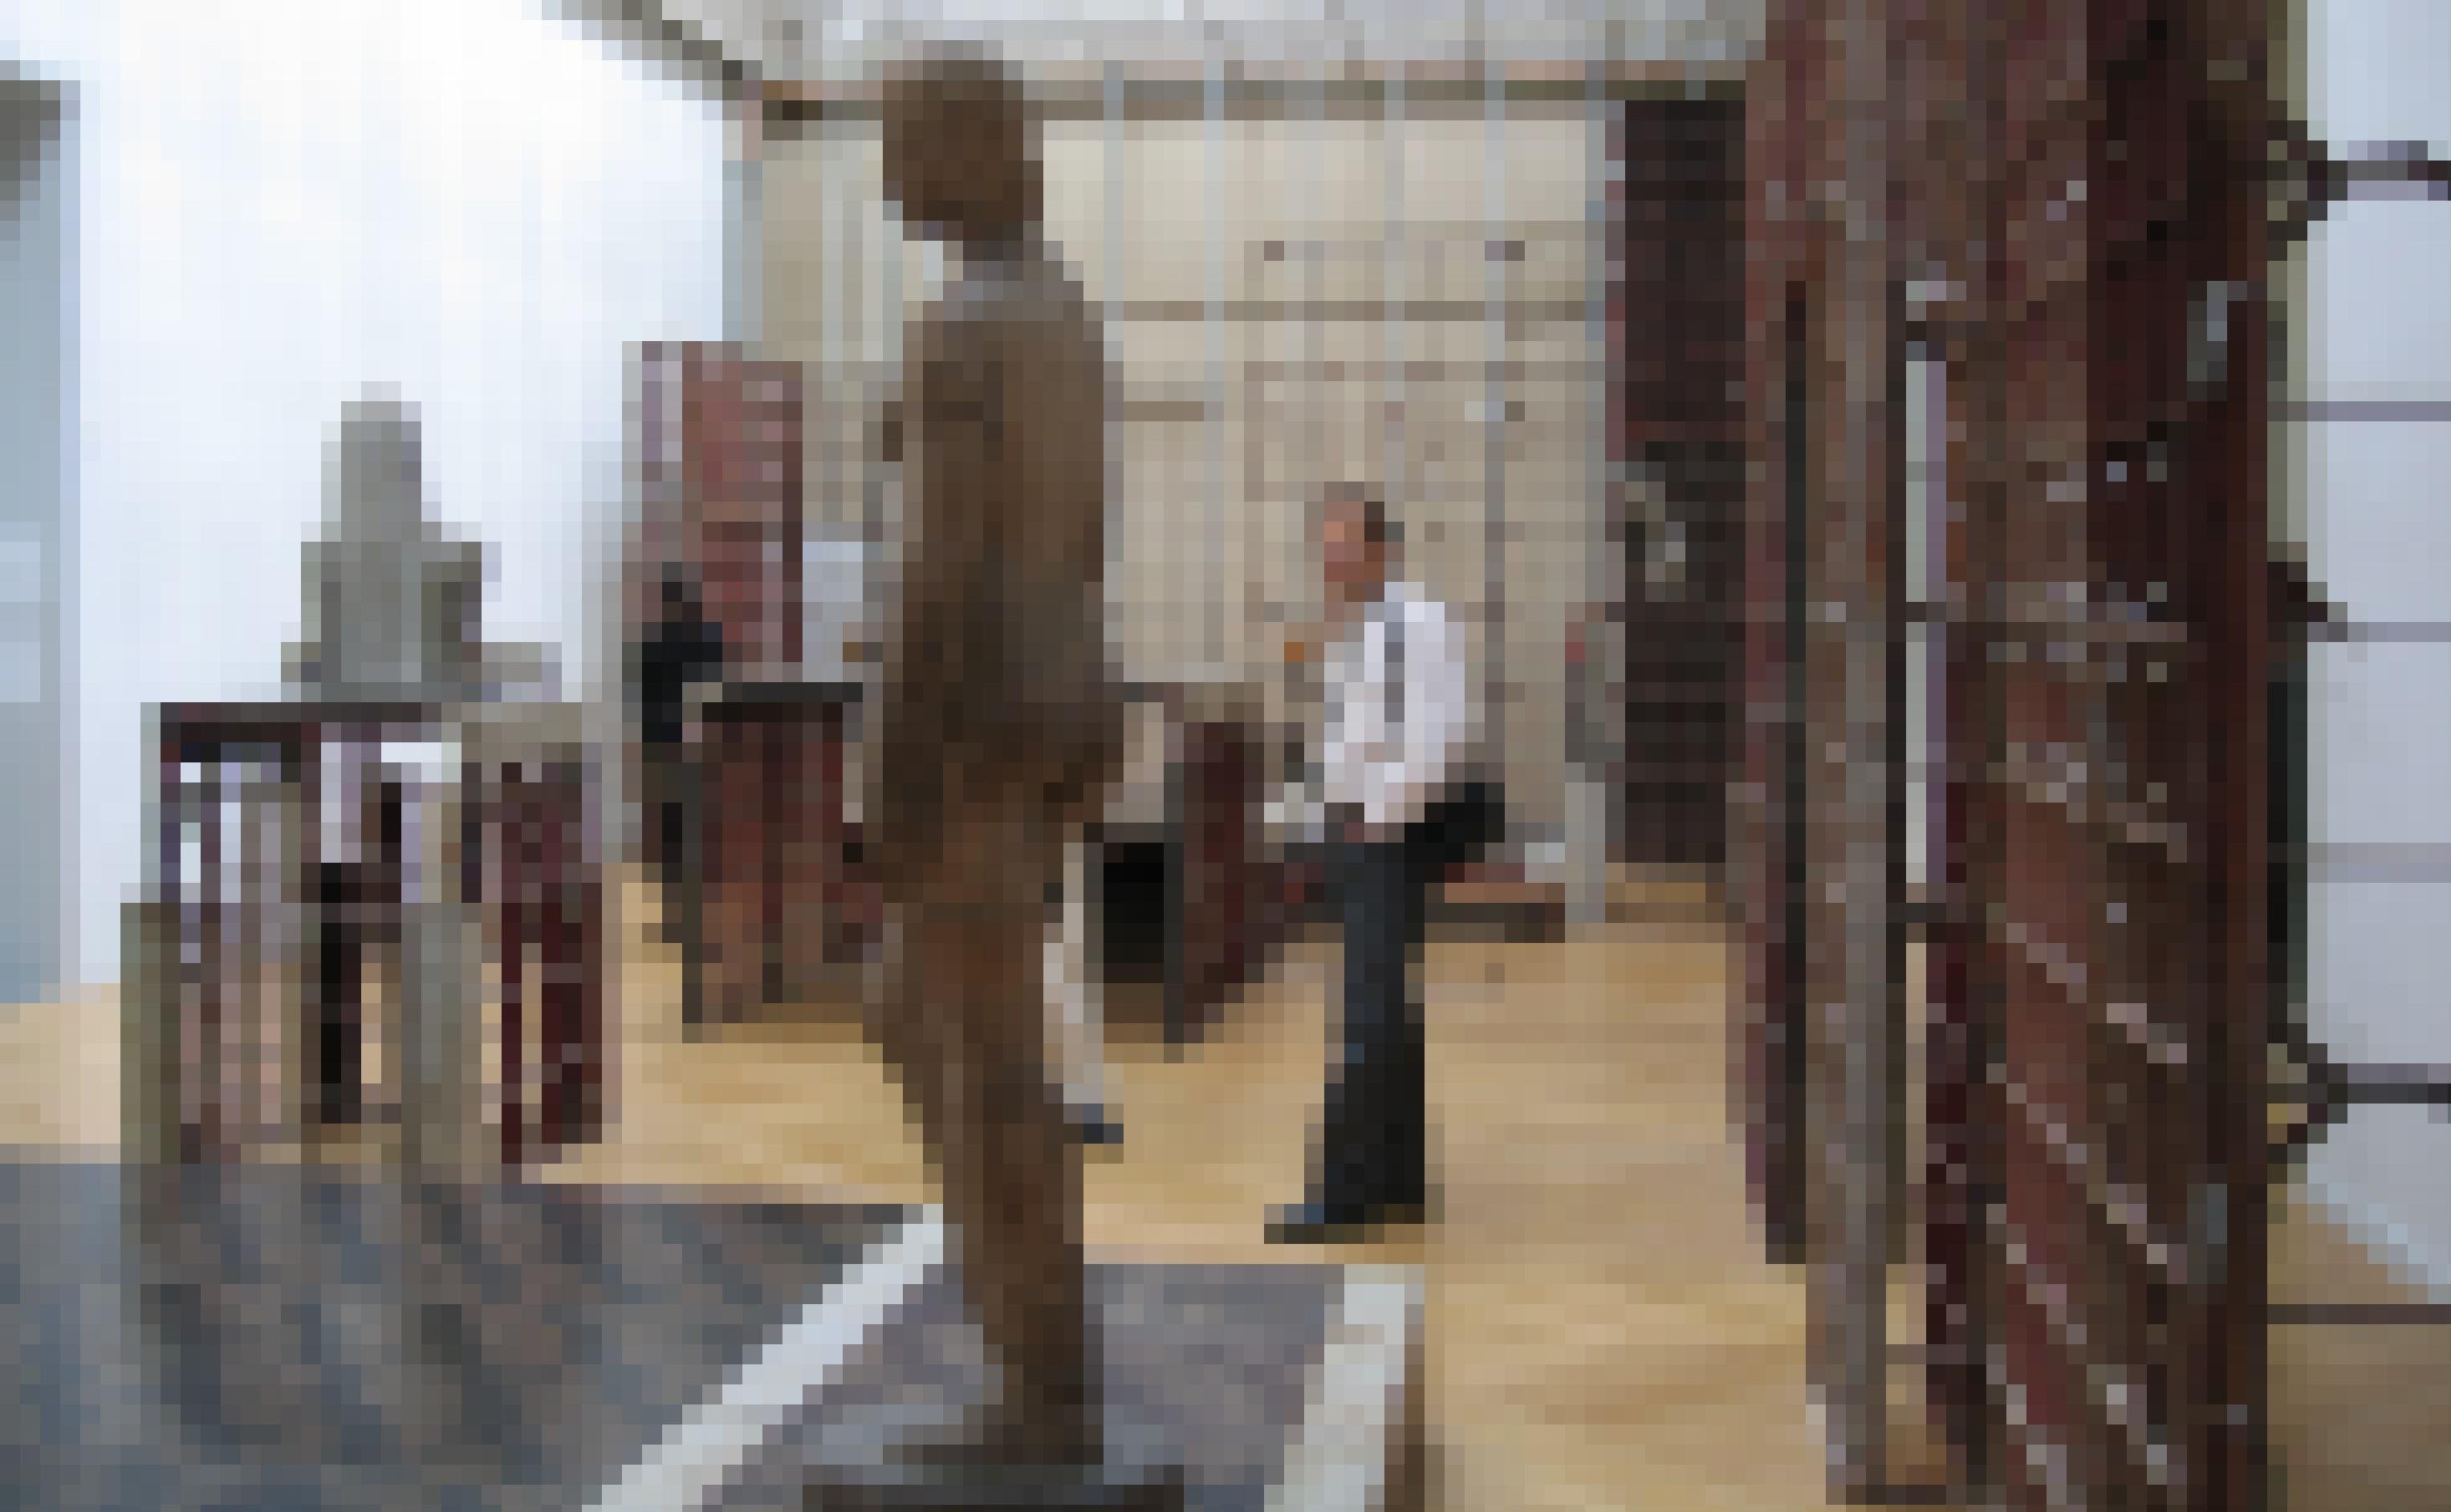 Das Foto zeigt beim Bau übliche Stahlgerüste und Dämmplatten, die in einem Ausstellungsraum als Sockel für figürliche Skulpturen dienen. Im Vordergrund ist eine weibliche Aktdarstellung zu sehen, die von einem Besucher betrachtet wird.